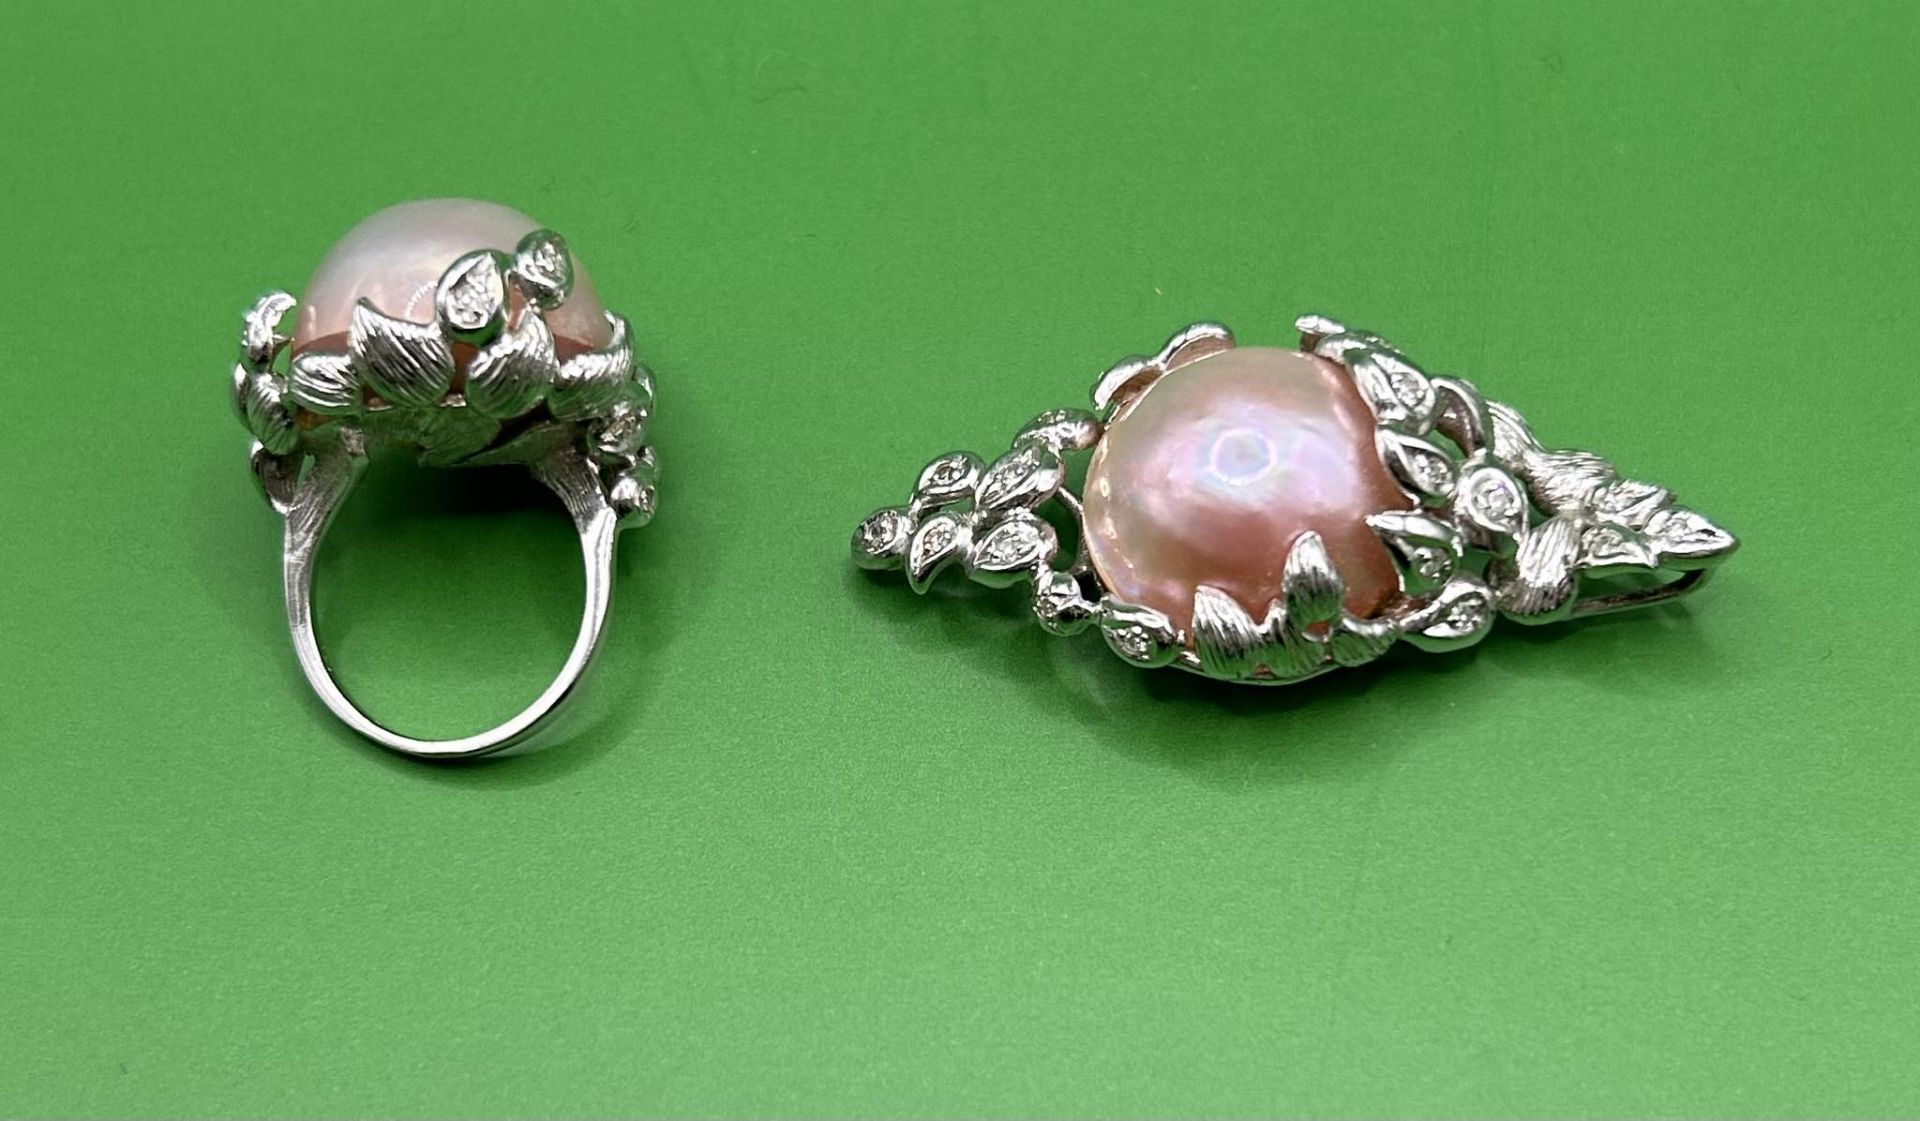 Vintage Schmuck Ring und Anhänger in Weissgold - Image 2 of 2